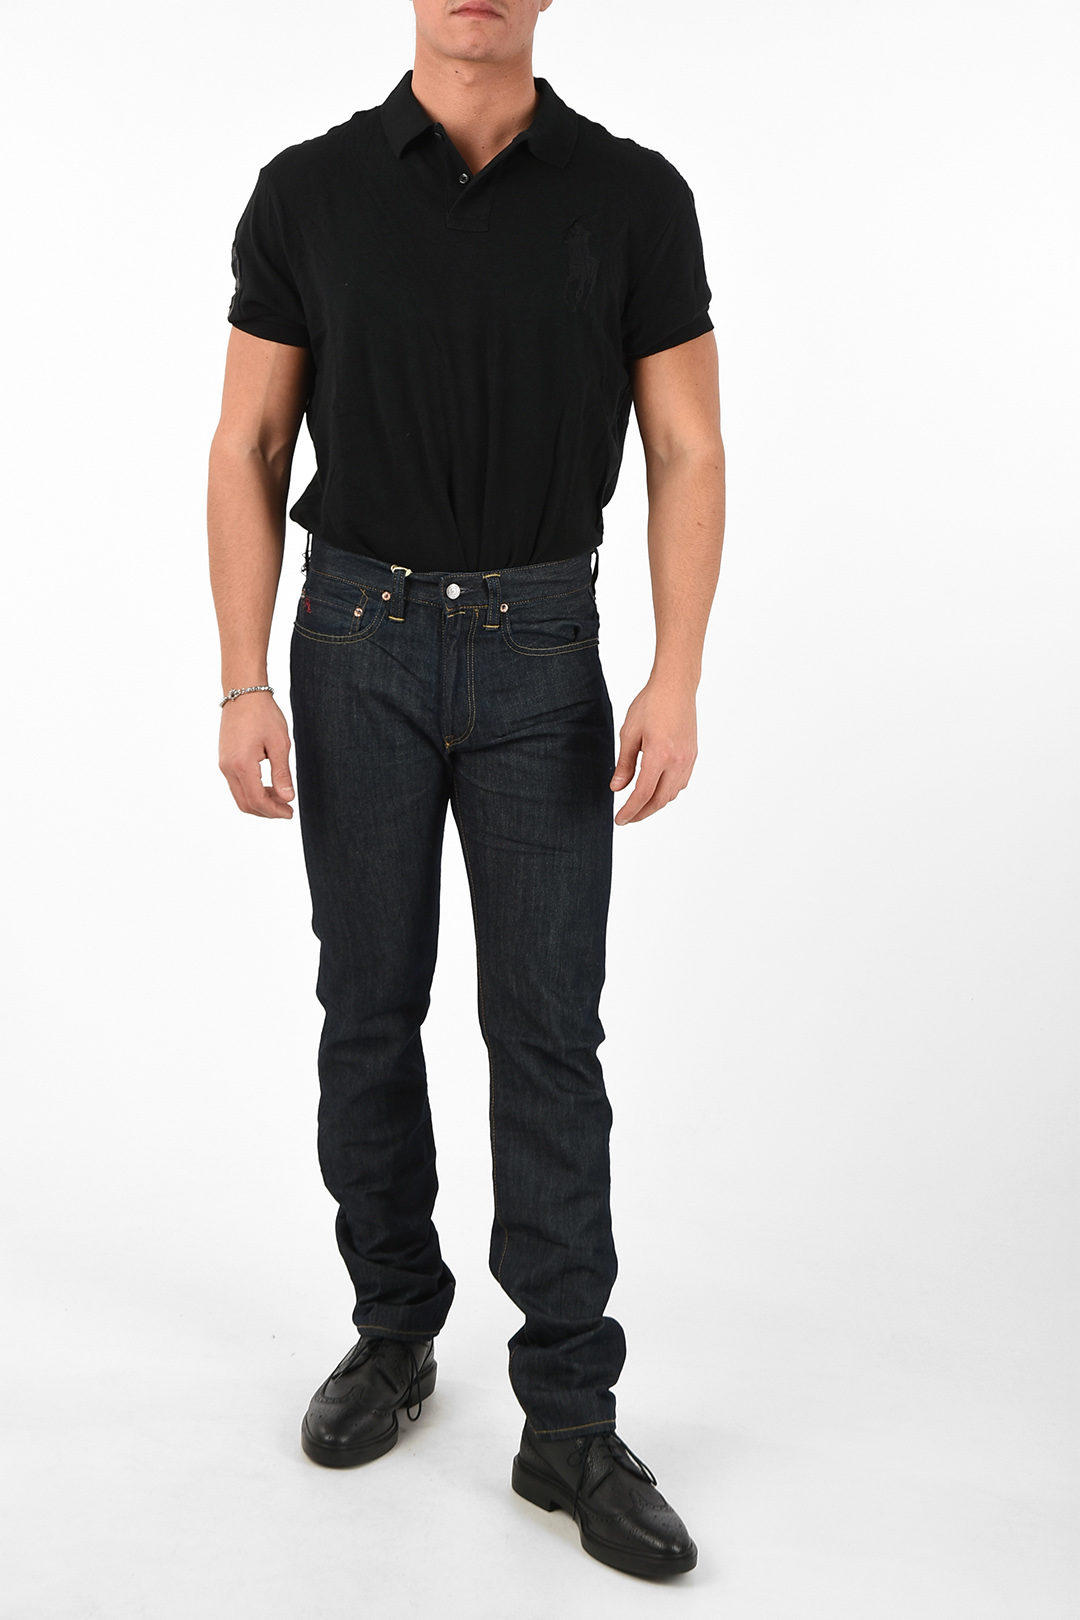 Polo Ralph Lauren 19cm slim fit 381 jeans men - Glamood Outlet